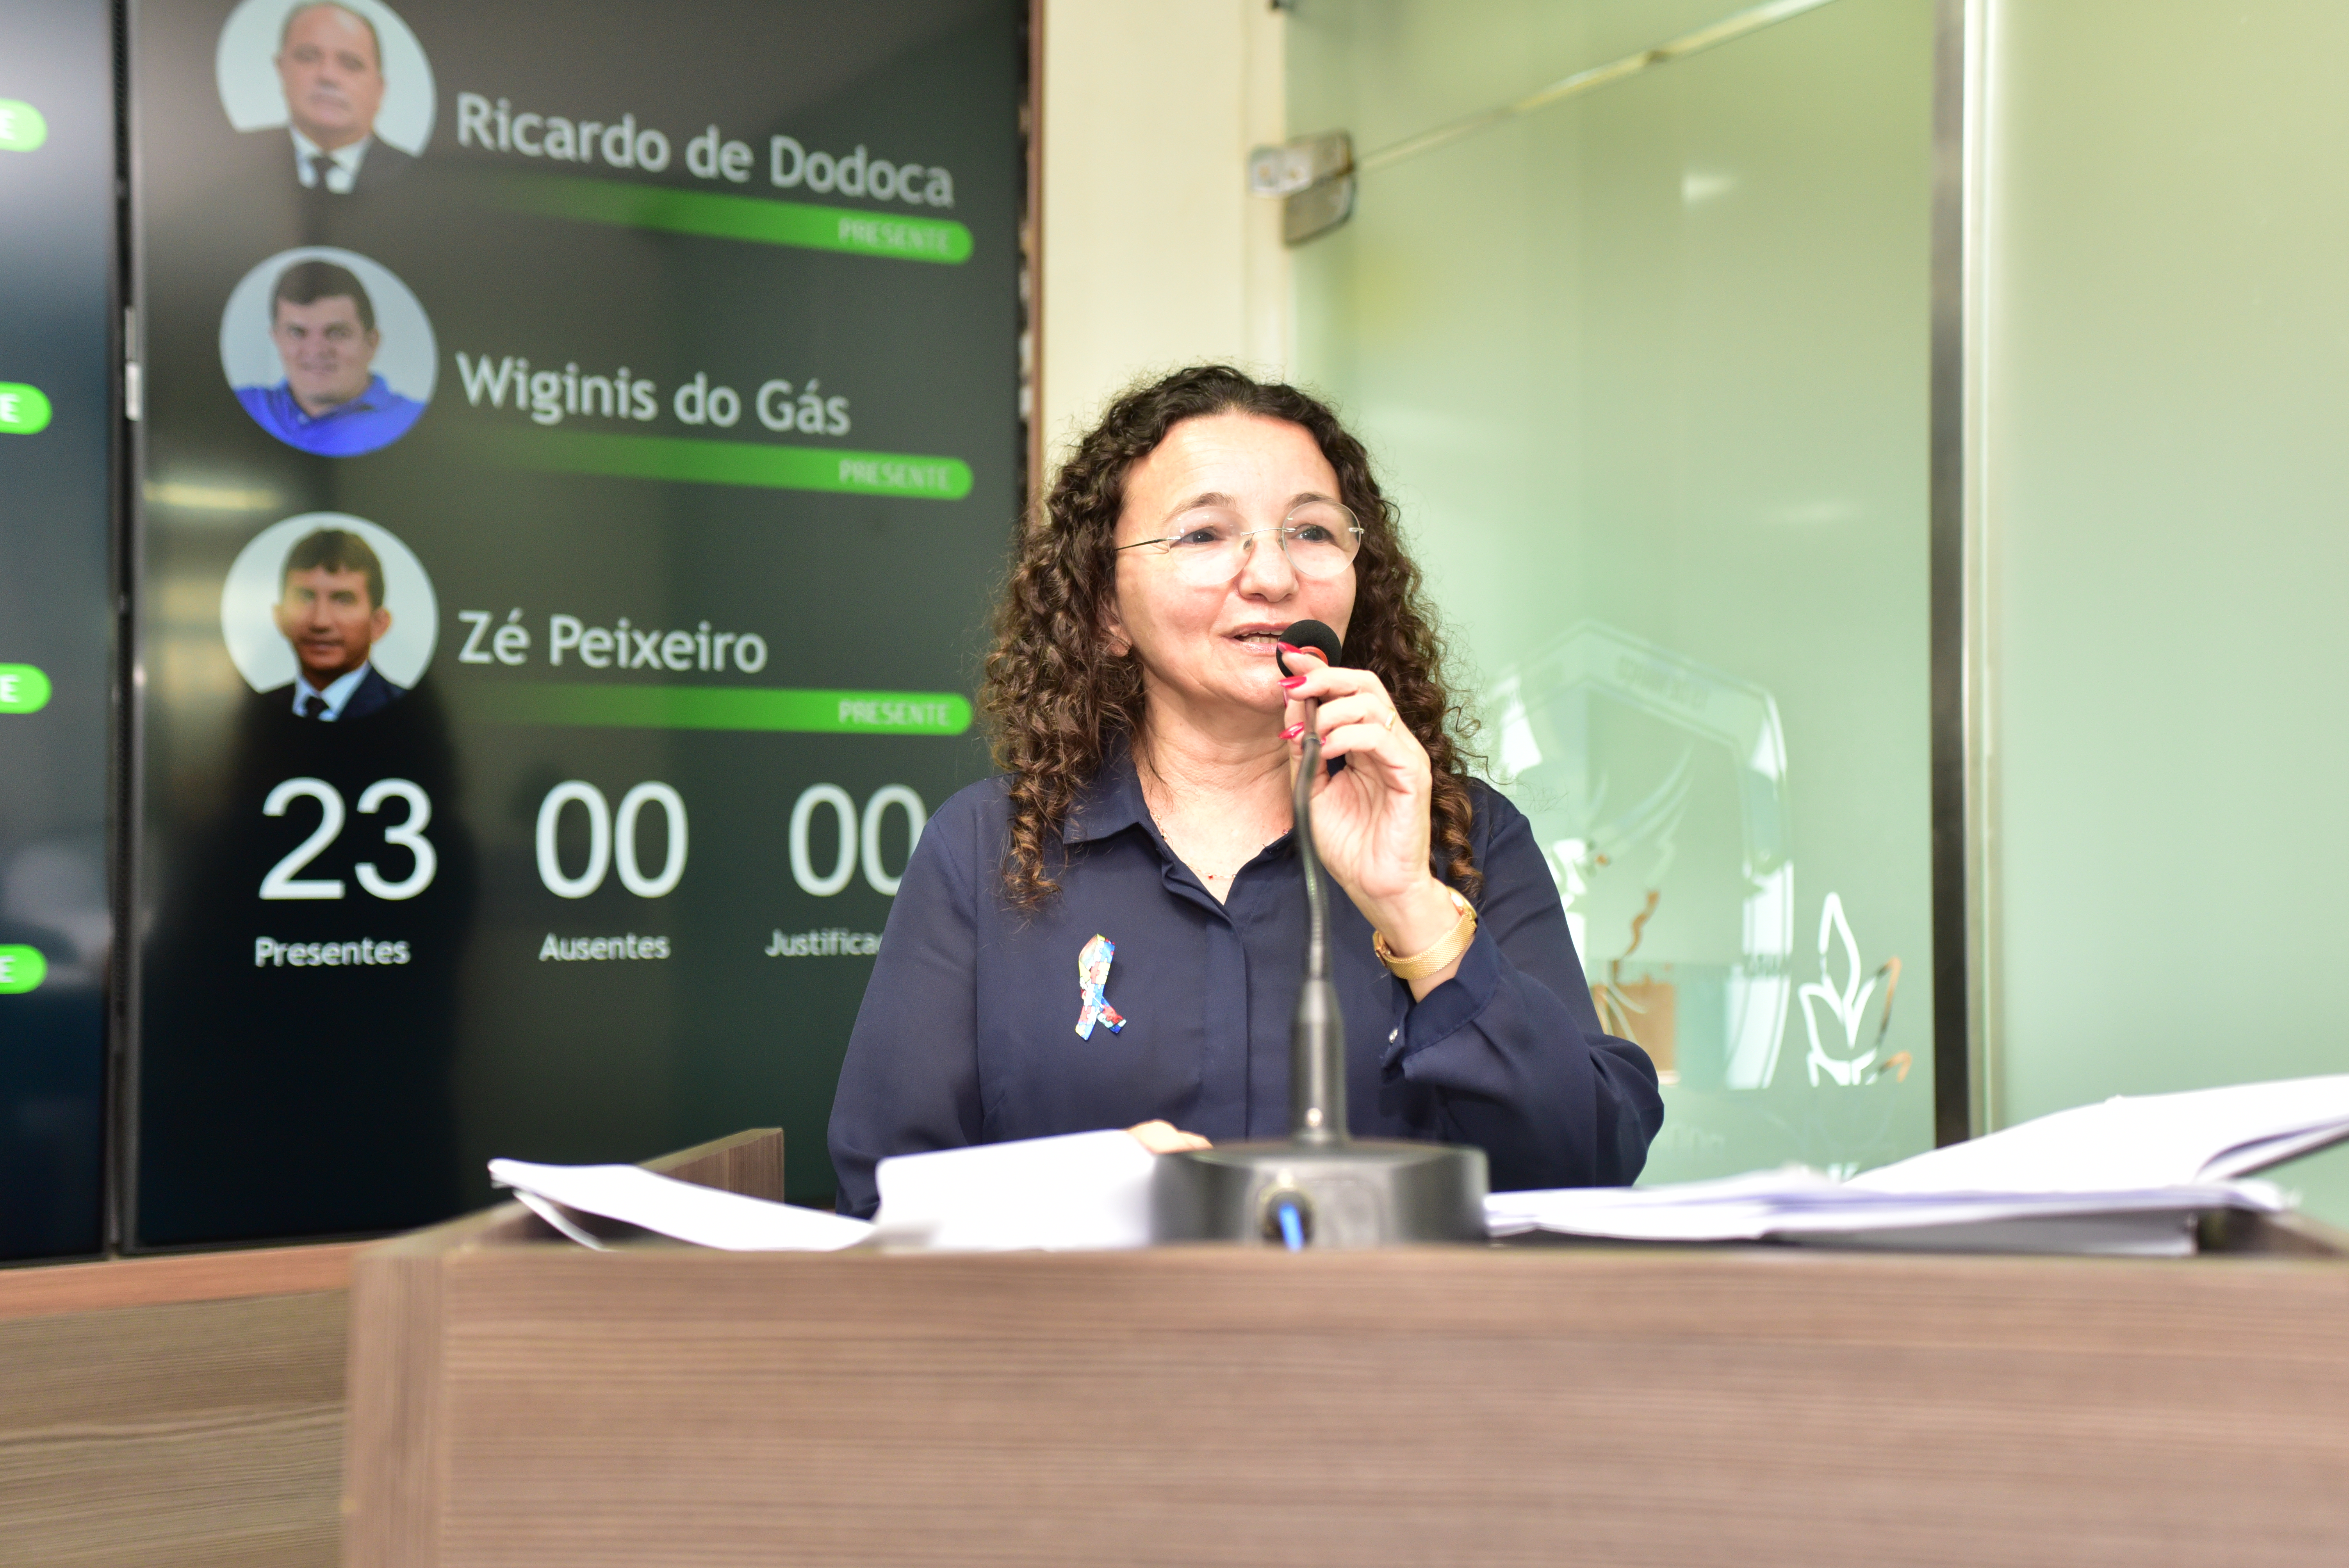 Vereadora Marleide Cunha critica suplente de vereador que debochou de servidores públicos